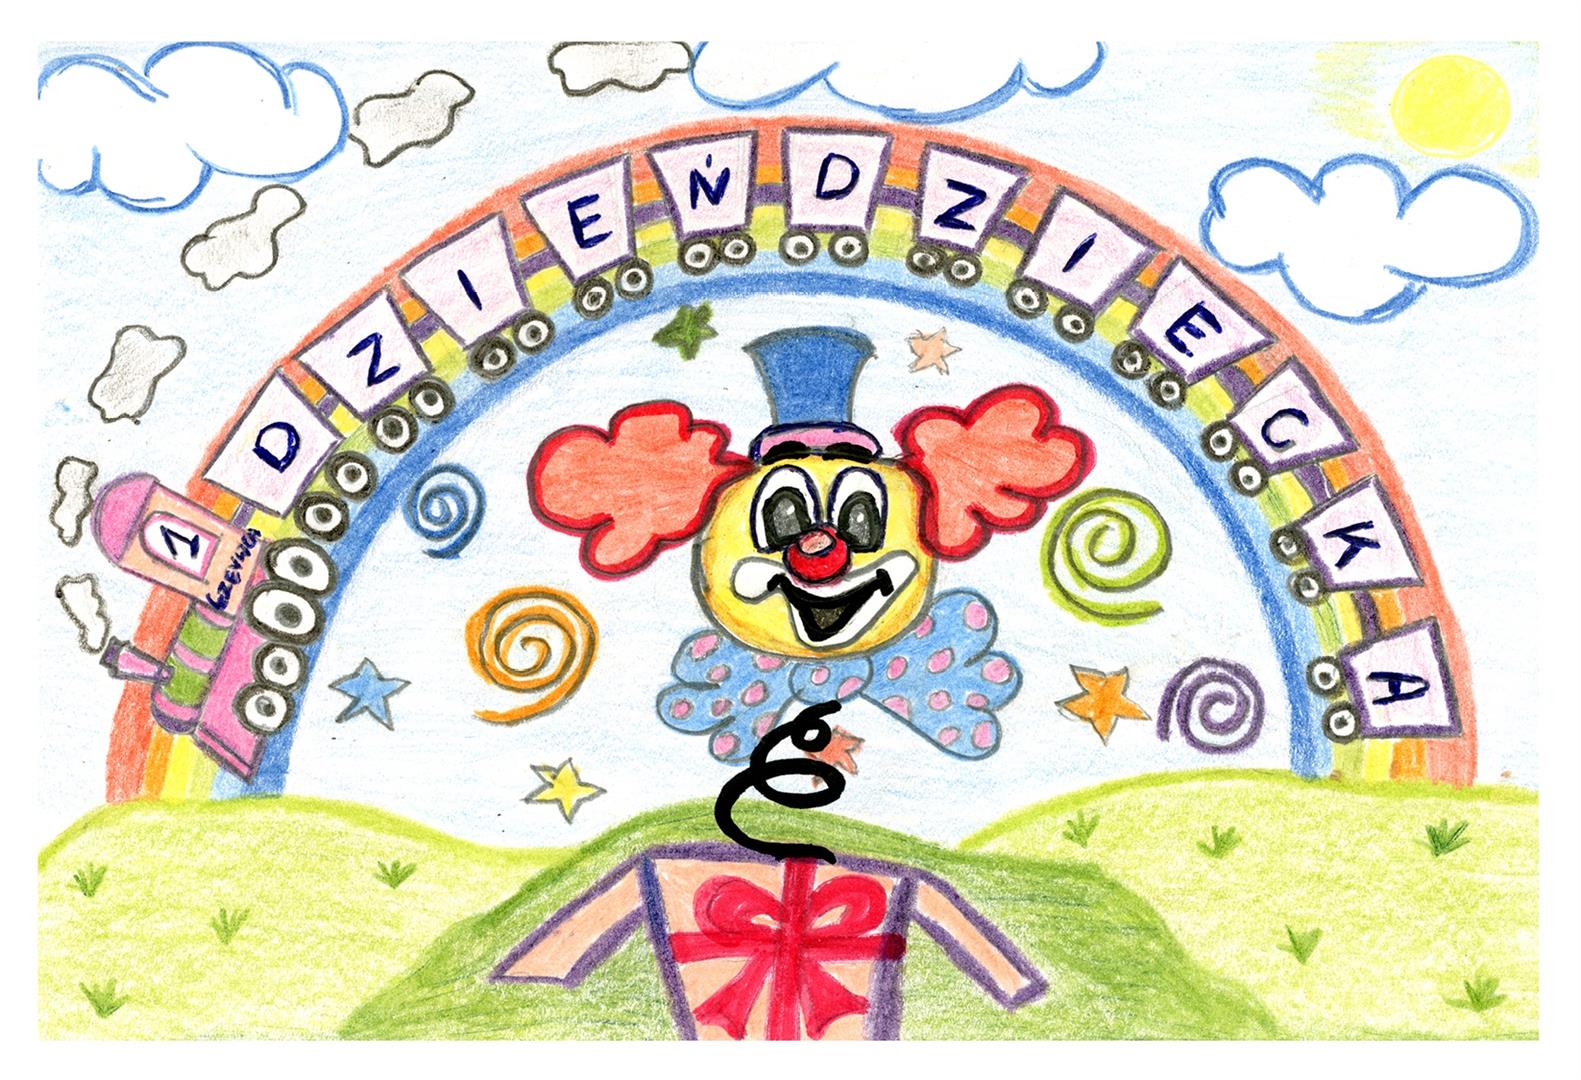 Kolorowy rysunek przedstawia klauna wyskakującego z pudełka na sprężynach. Nad nim tęcza z napisem Dzień Dziecka.